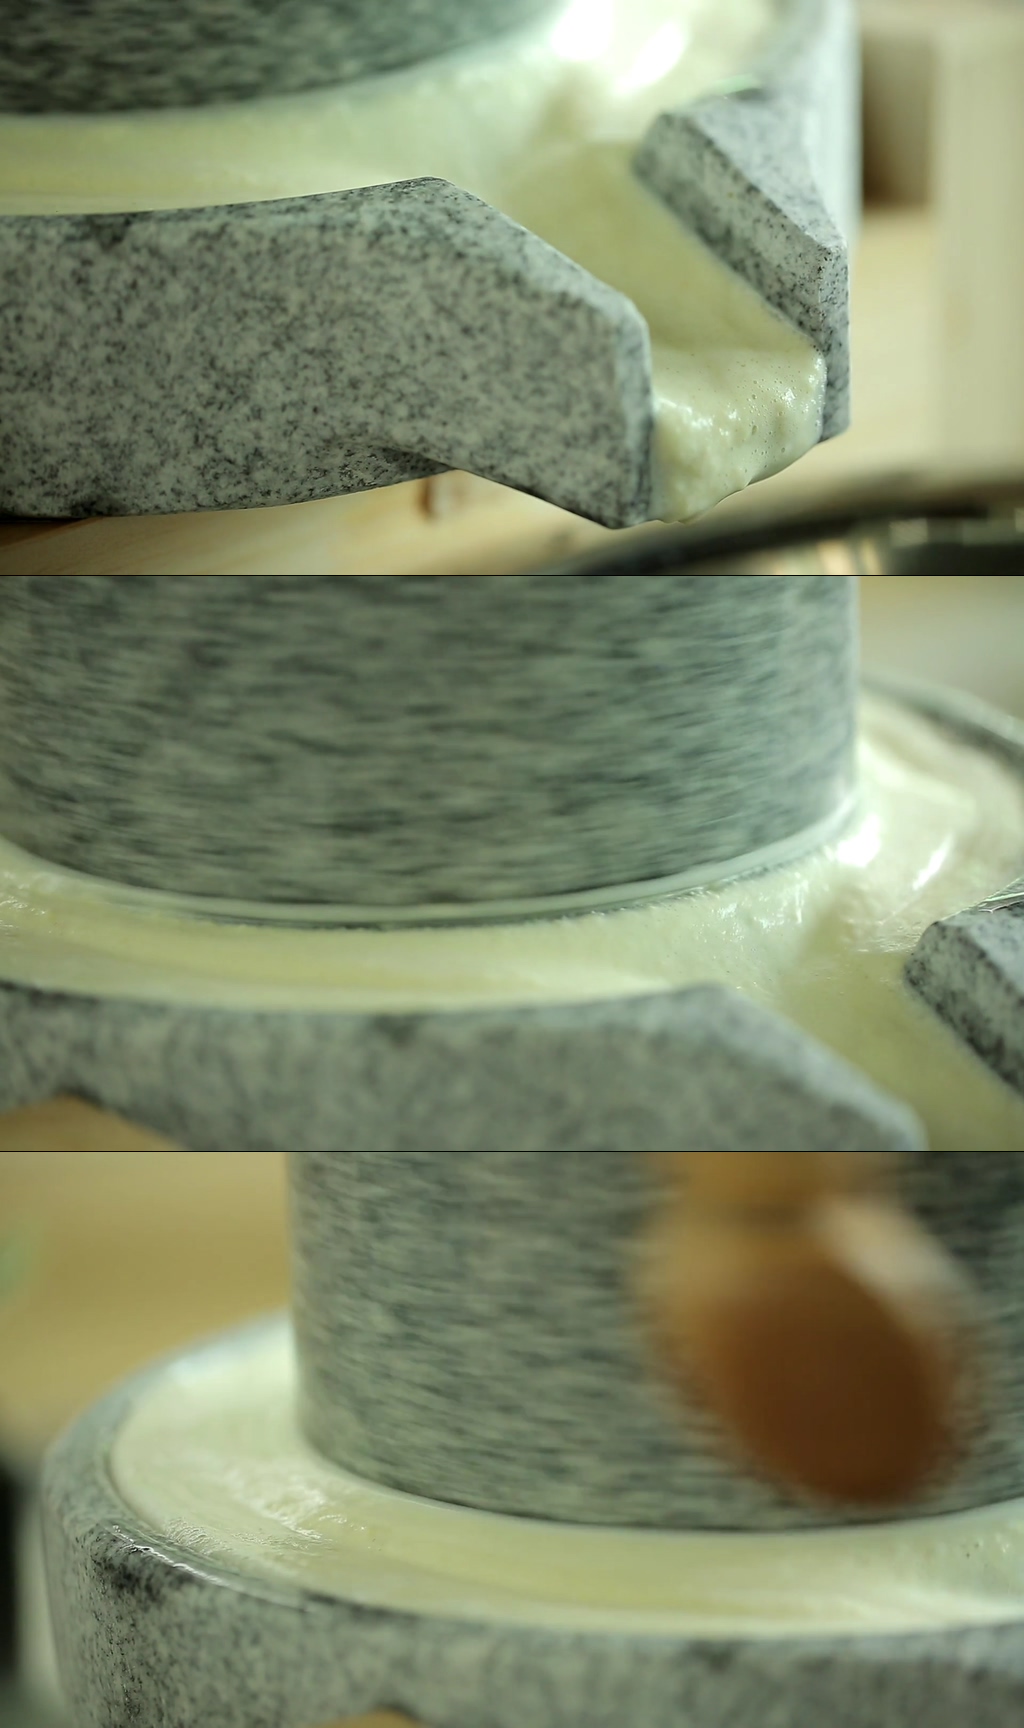 磨豆浆全过程实拍素材免费下载,本作品是由stacey上传的原创视频素材